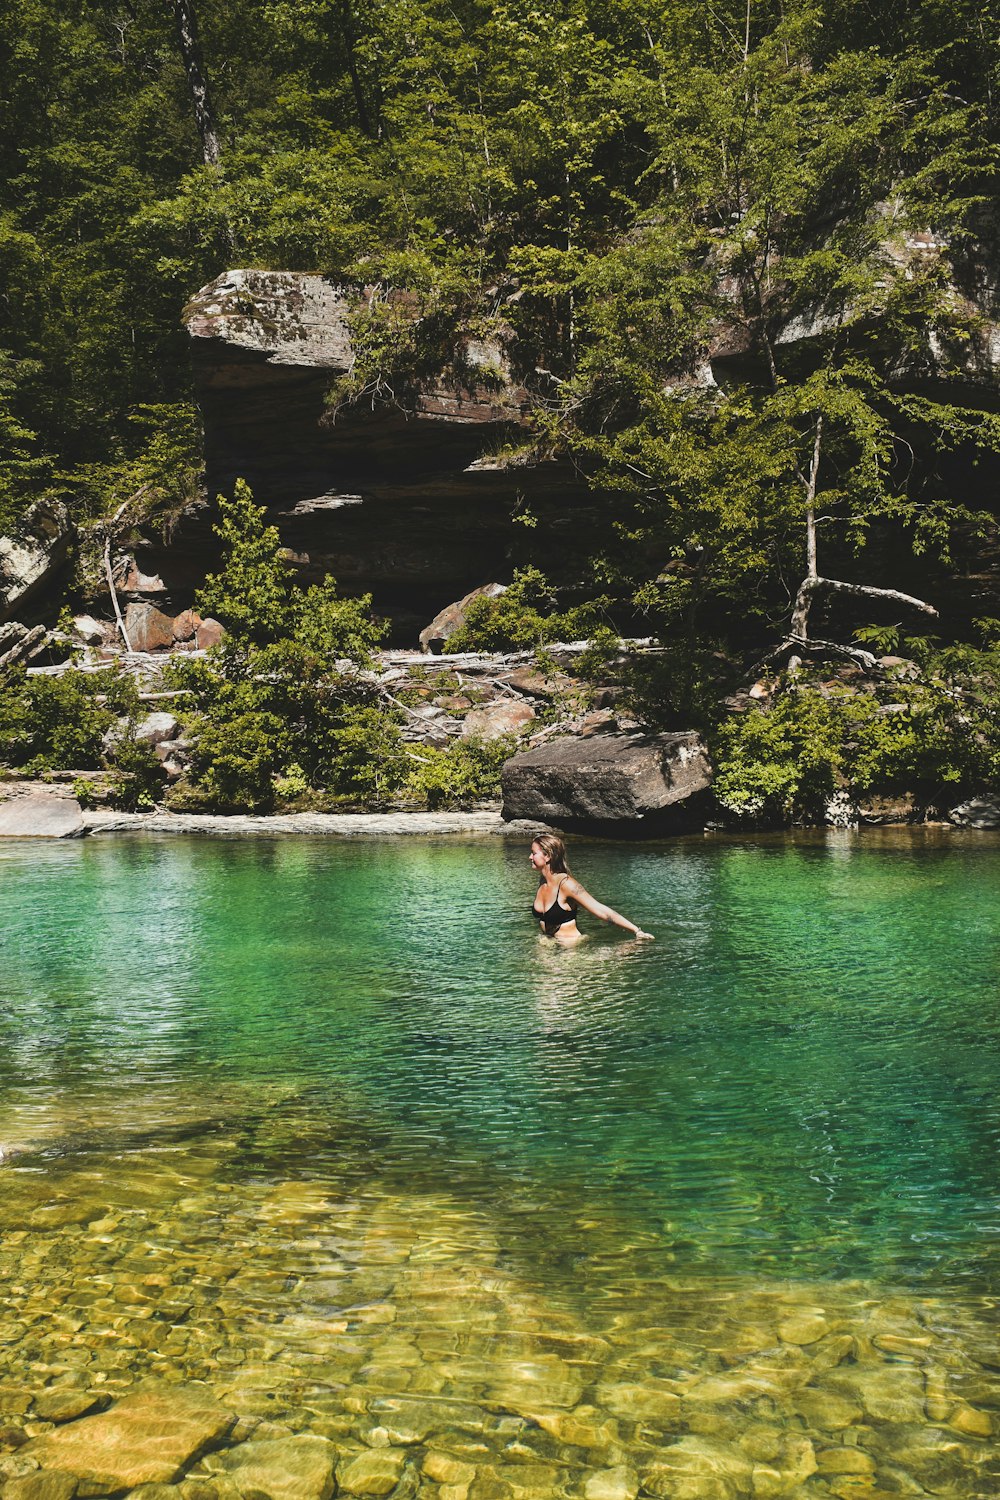 una persona che nuota in un lago circondato da alberi